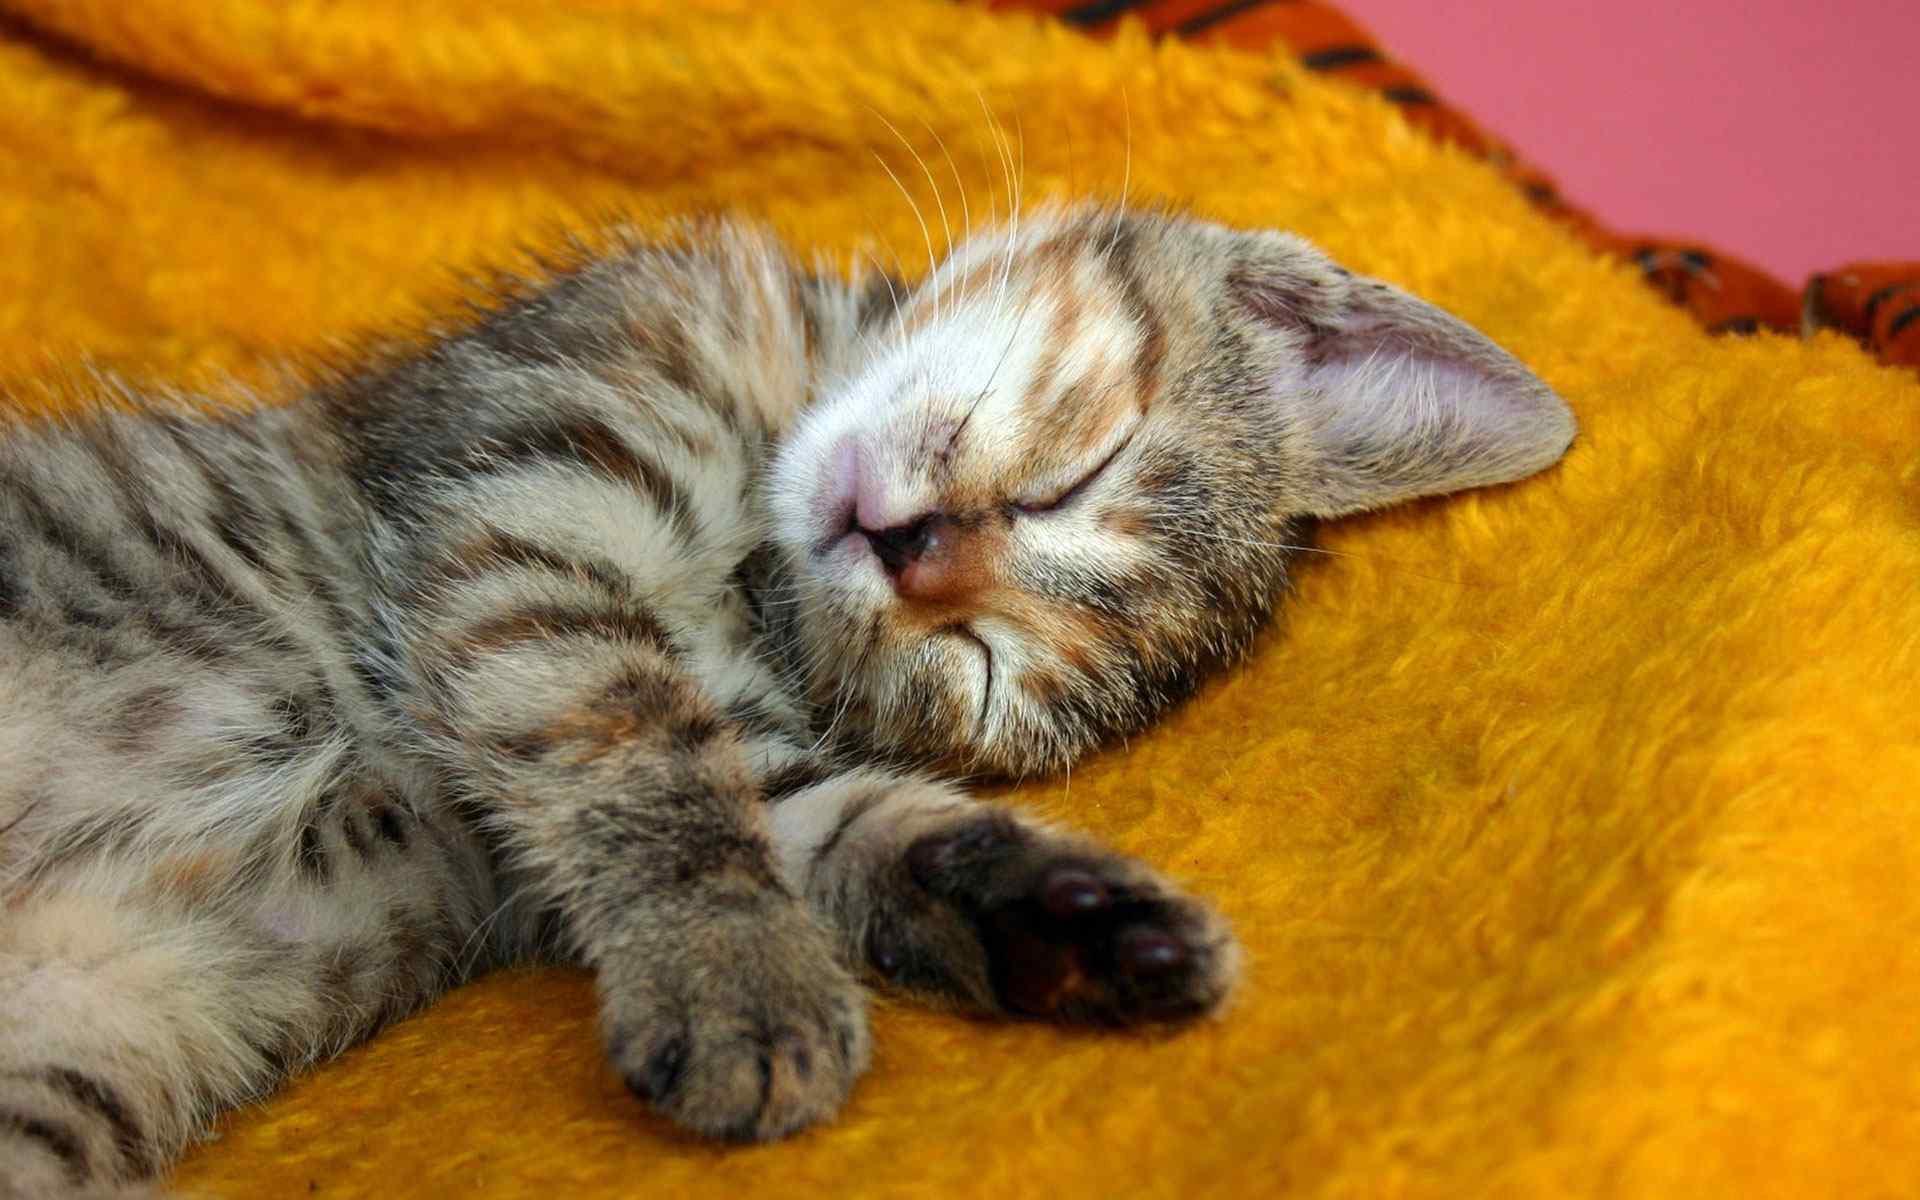 酣睡猫咪摄影壁纸